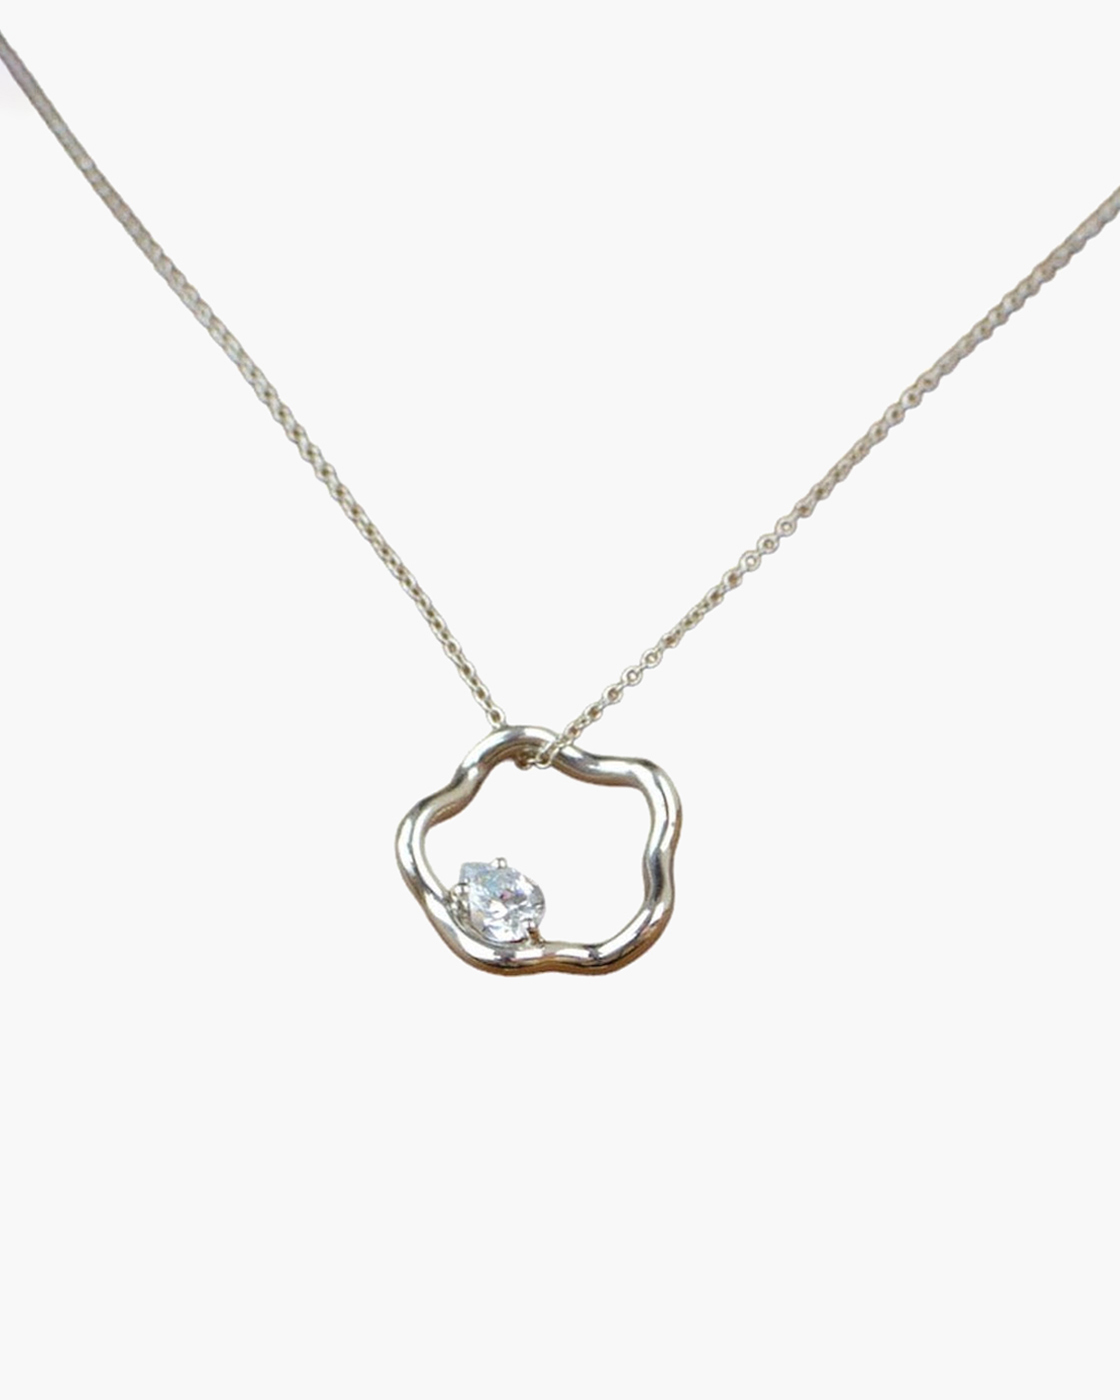 Petite Comete Small Star Necklace in 925 Silver